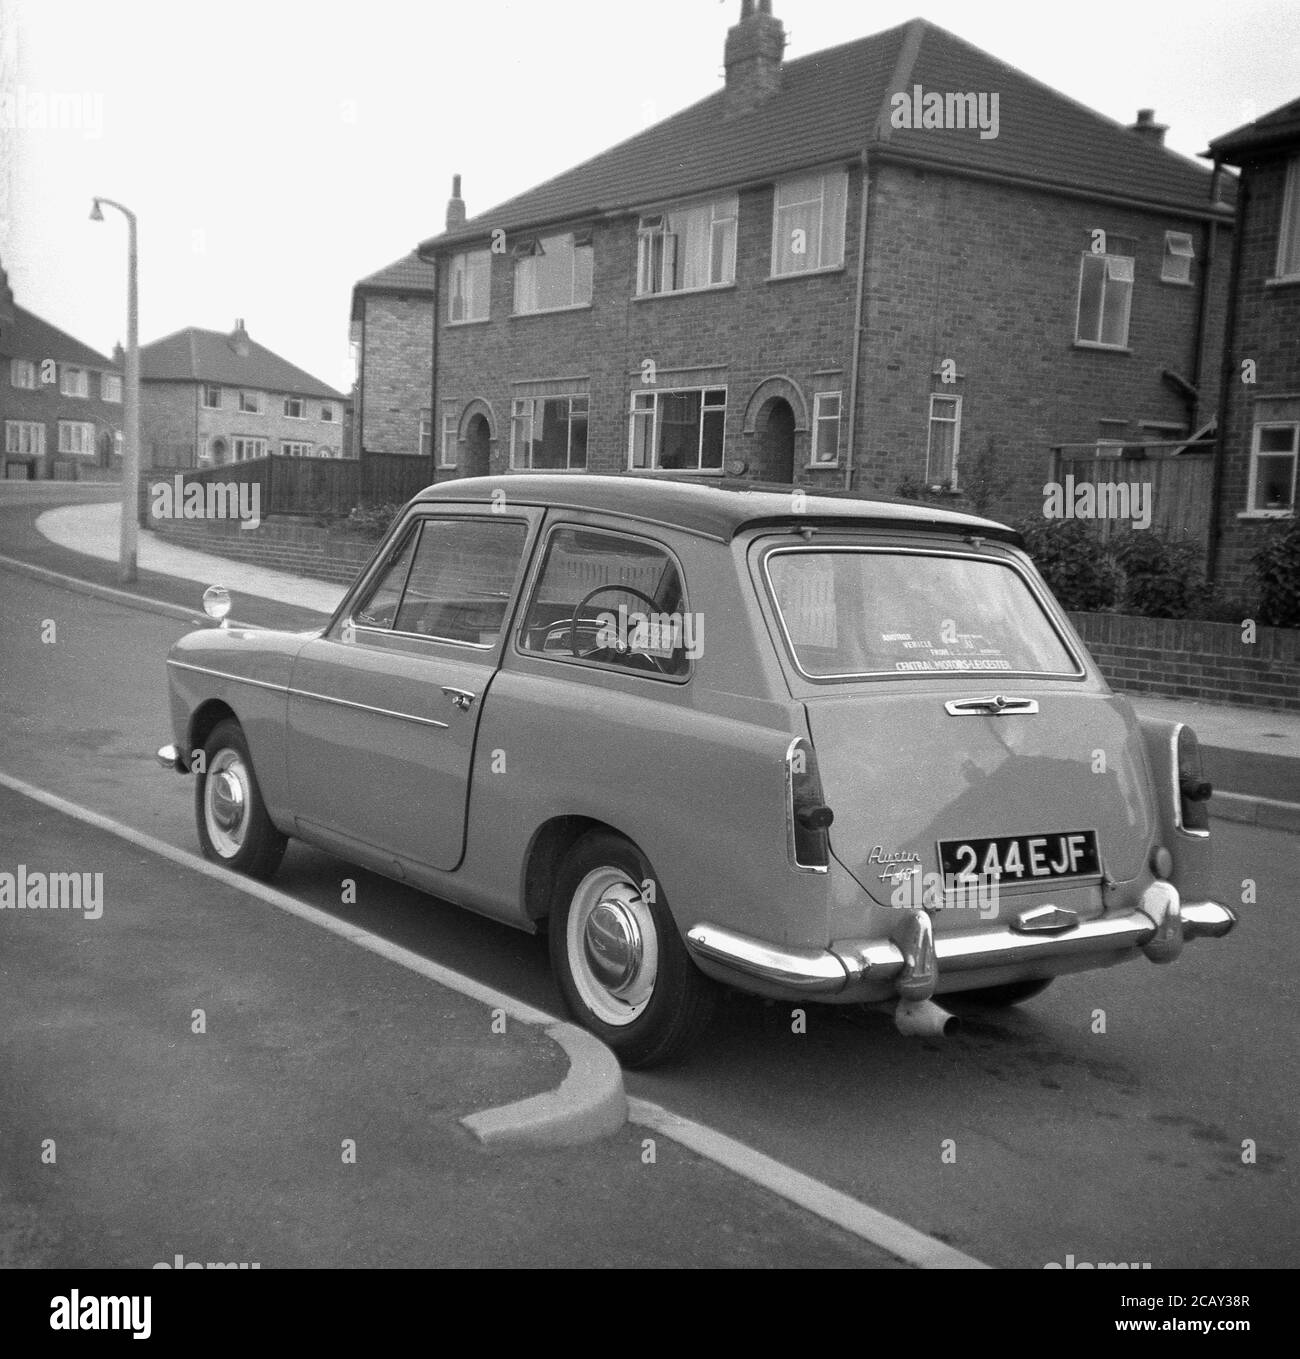 1960, historisch, ein Austin A40 Farina Auto geparkt in einer Straße auf einem neuen Wohngebiet, England, Großbritannien. Ein kleines, sparendes Auto, hergestellt von der britischen Motor Coporation (BMC) wurde es den Namen Austin A40 Farina, was das neue Design des italienischen 'Battista Farina Pinin Farina Turin Studio widerspiegelt. Das hier gezeigte Auto ist die Mark 1 Limousine, die zwischen 1958 und 1961 gebaut wurde. Stockfoto